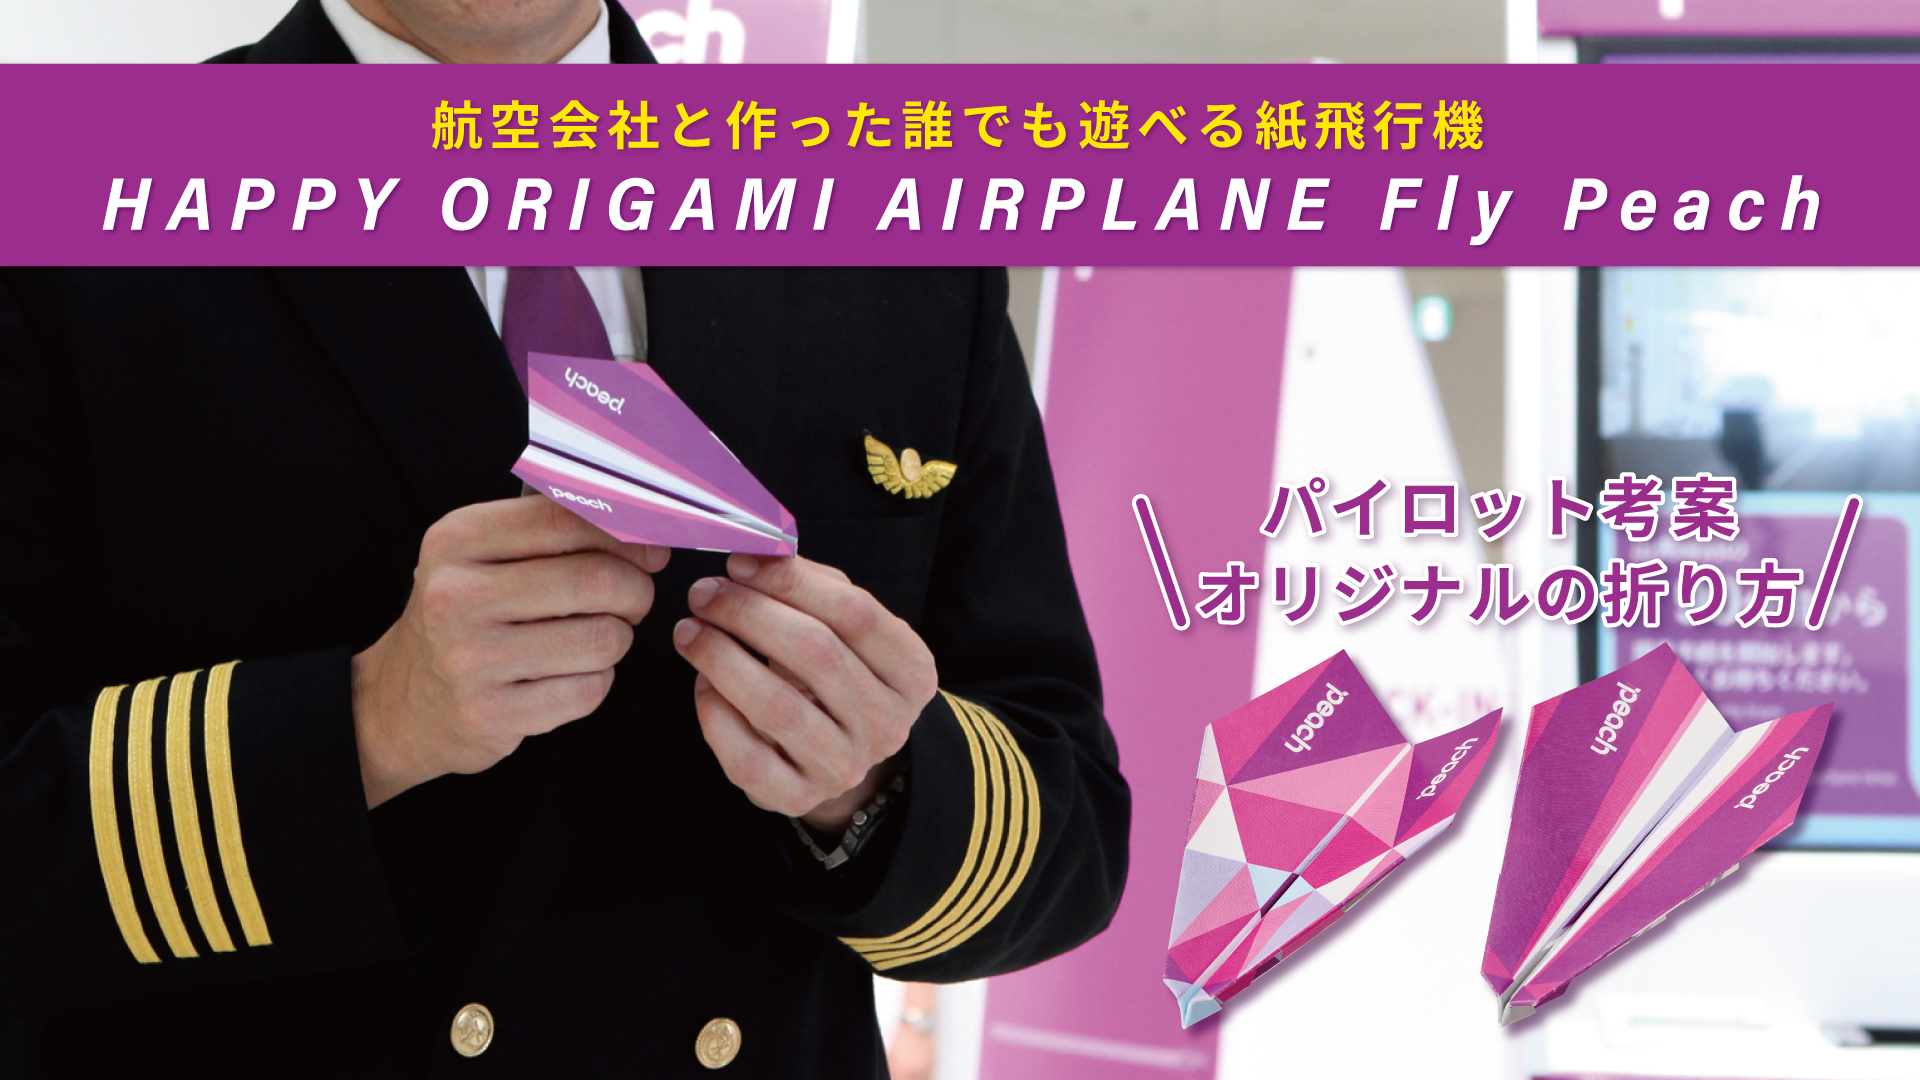 航空会社と作った誰でも遊べる紙飛行機が発売 Peachパイロットが航空力学に基づき考案した Happy Origami Airplane Fly Peach Peach ドリームズが初のコラボ 株式会社ドリームズのプレスリリース